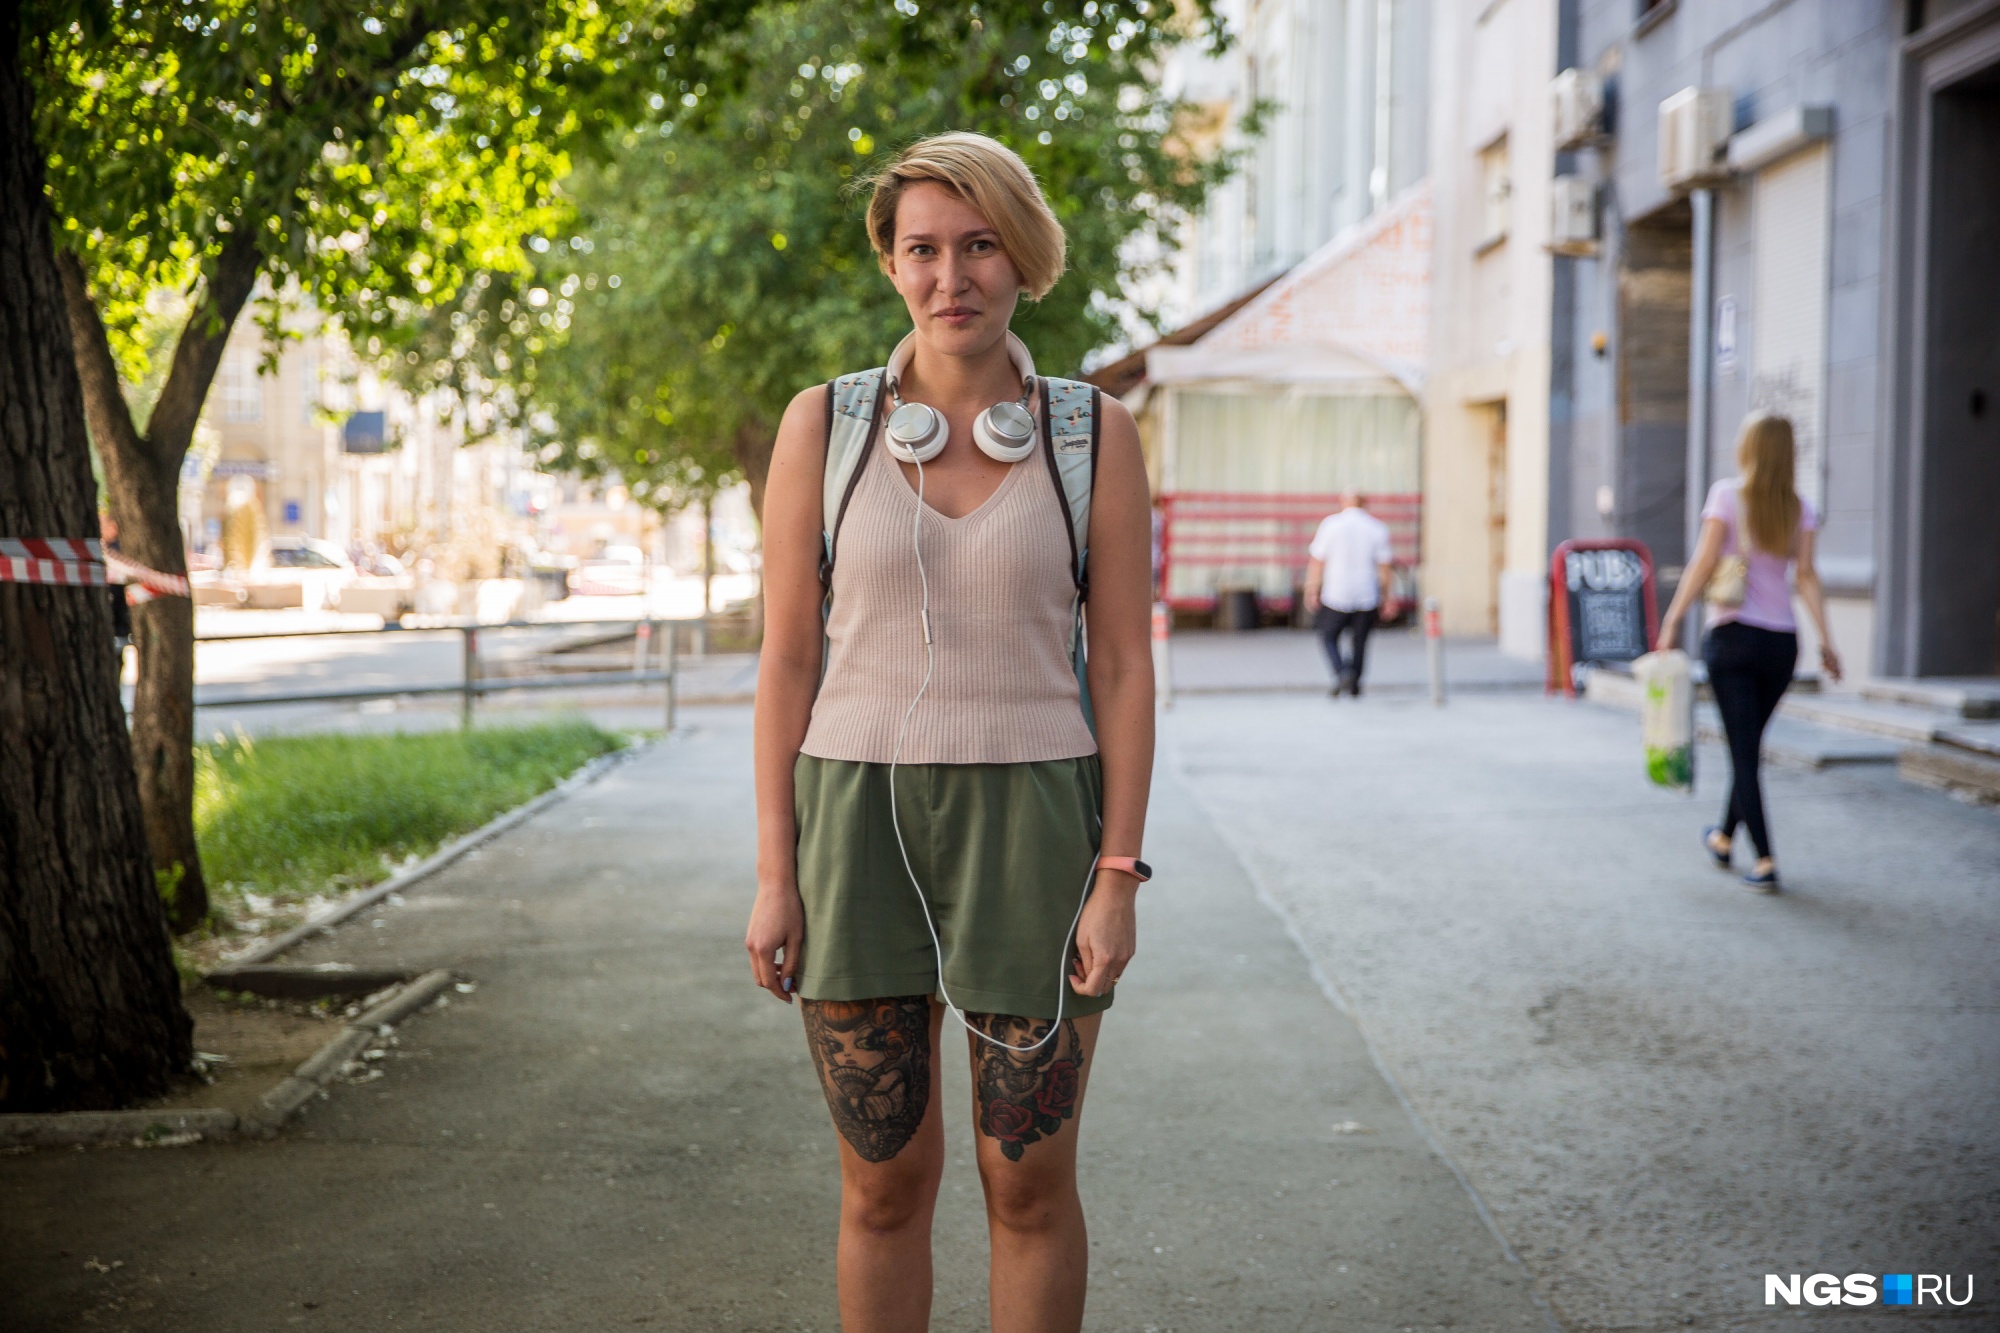 Мария из Академгородка, она советует не ходить в шортах в нижней зоне 